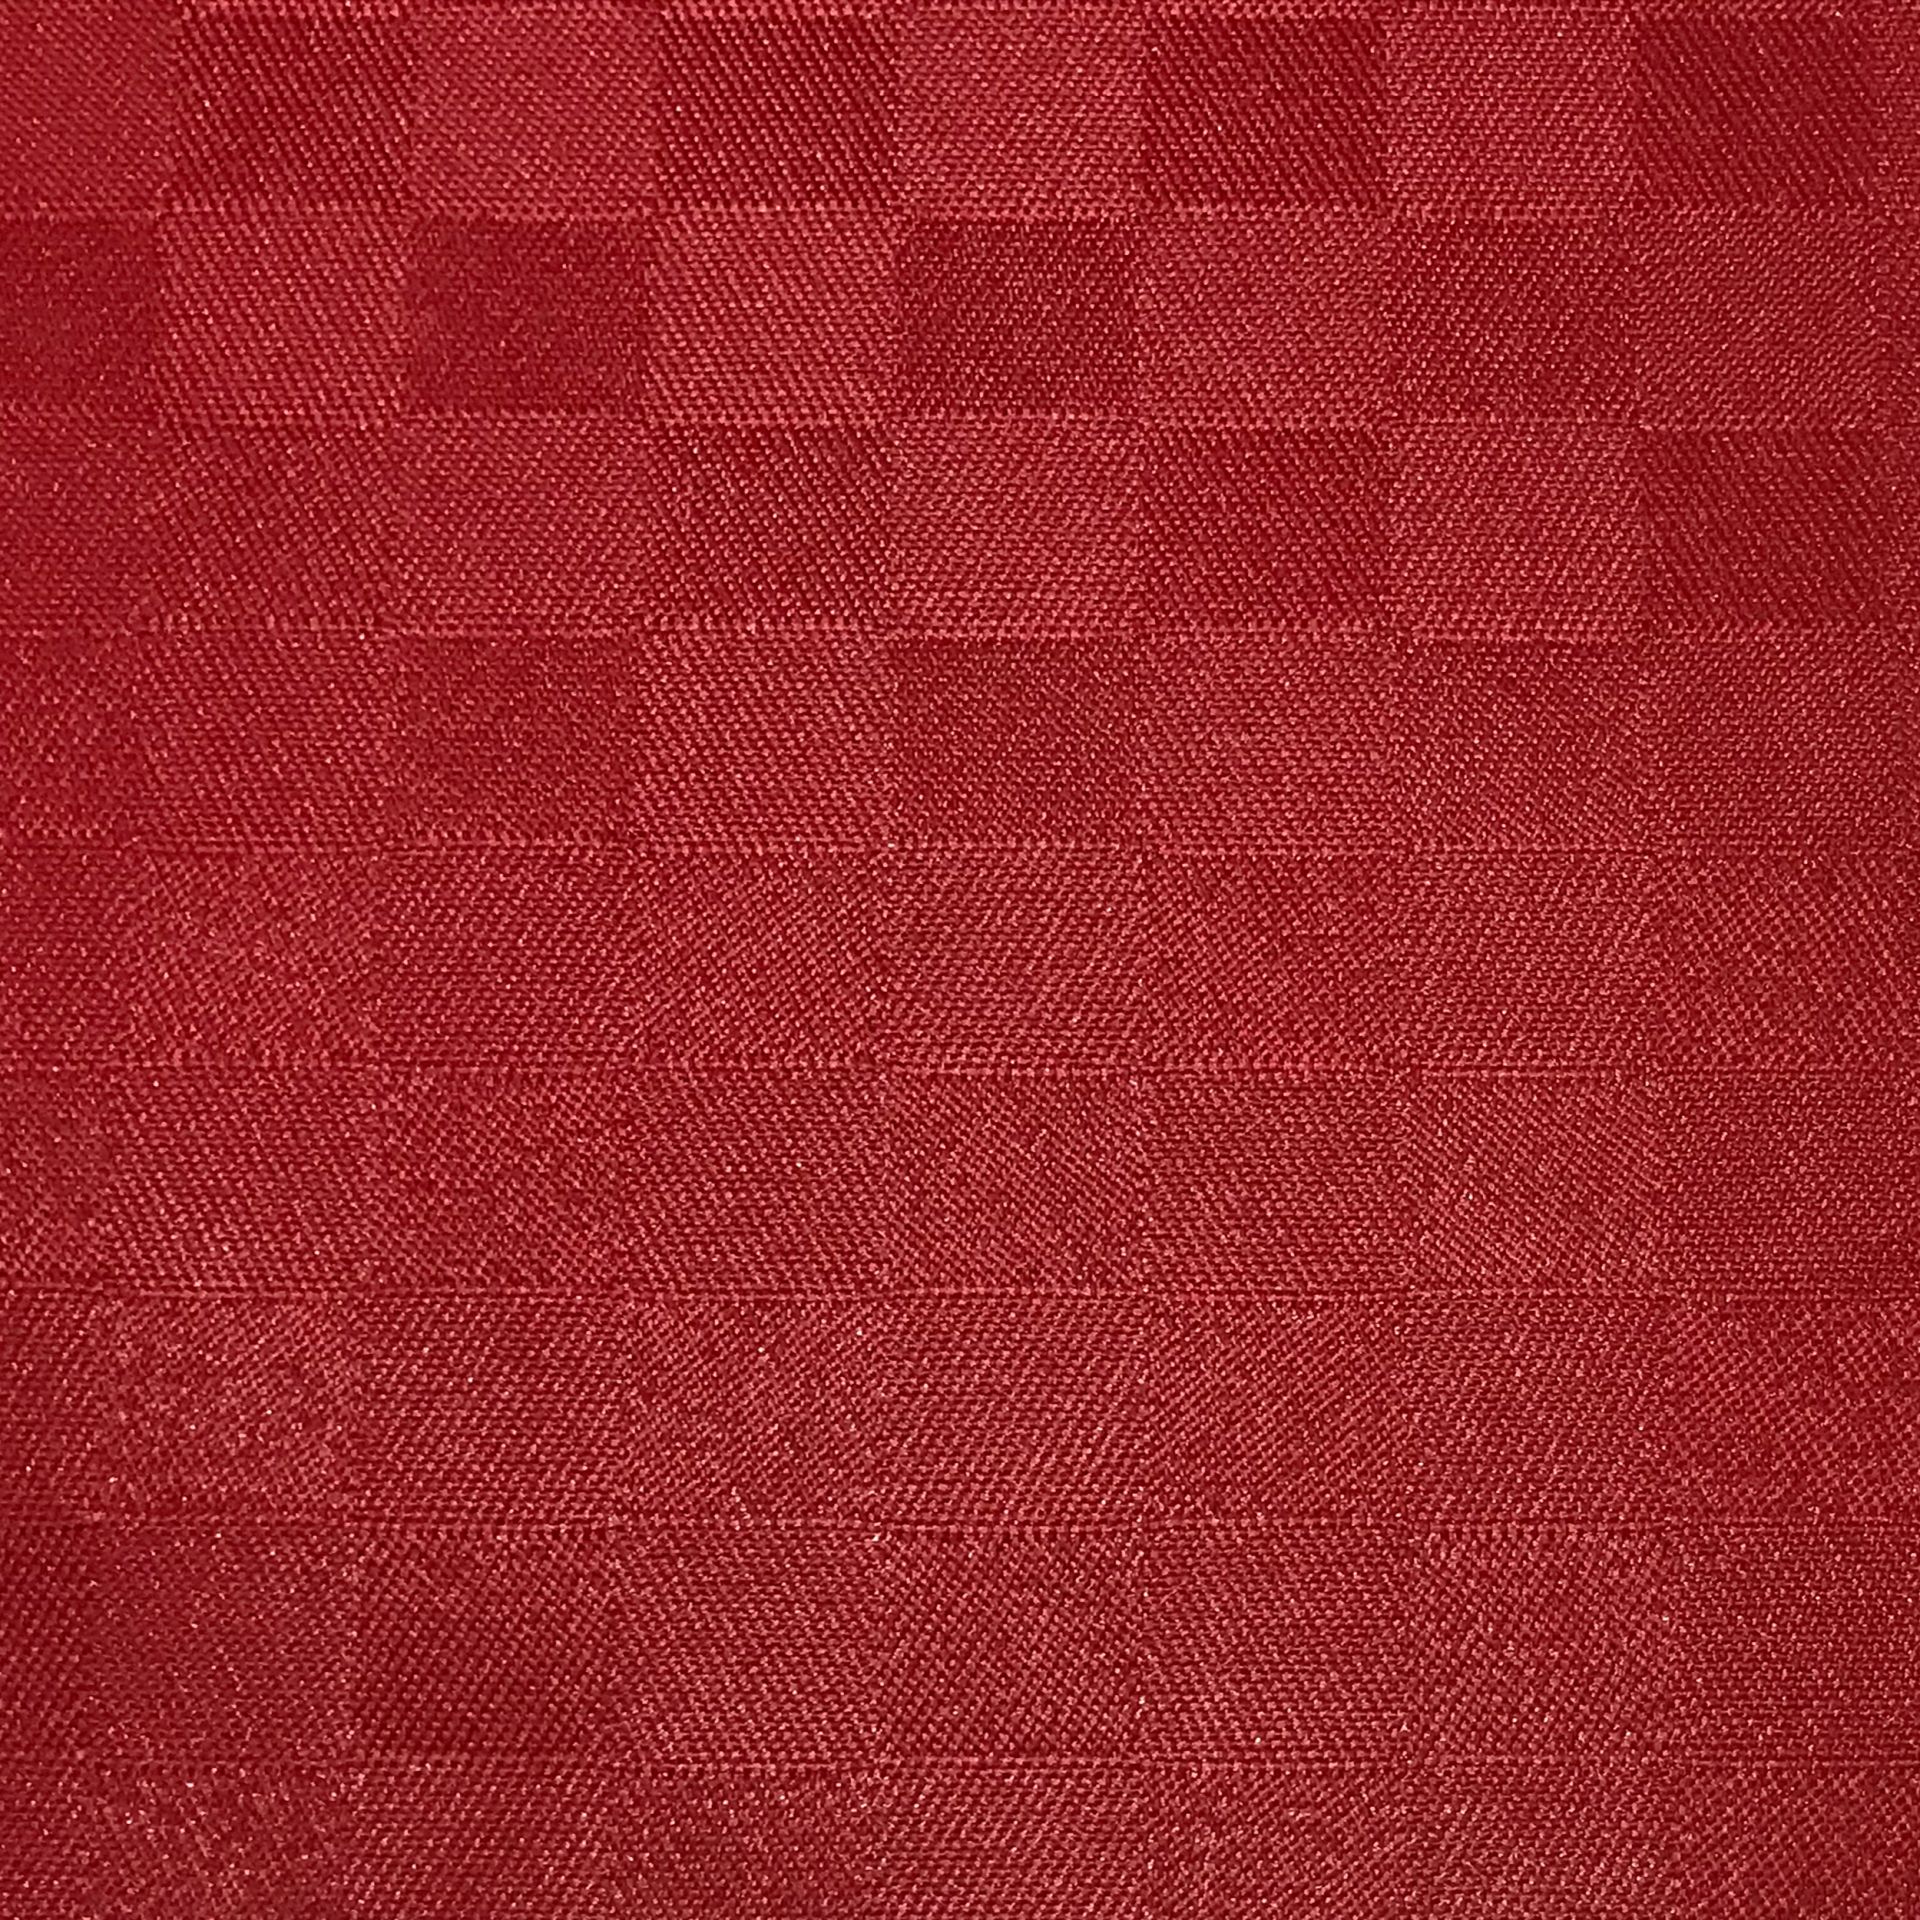 Ritaglio Tela Damina Resinata Rossa 200x140 cm